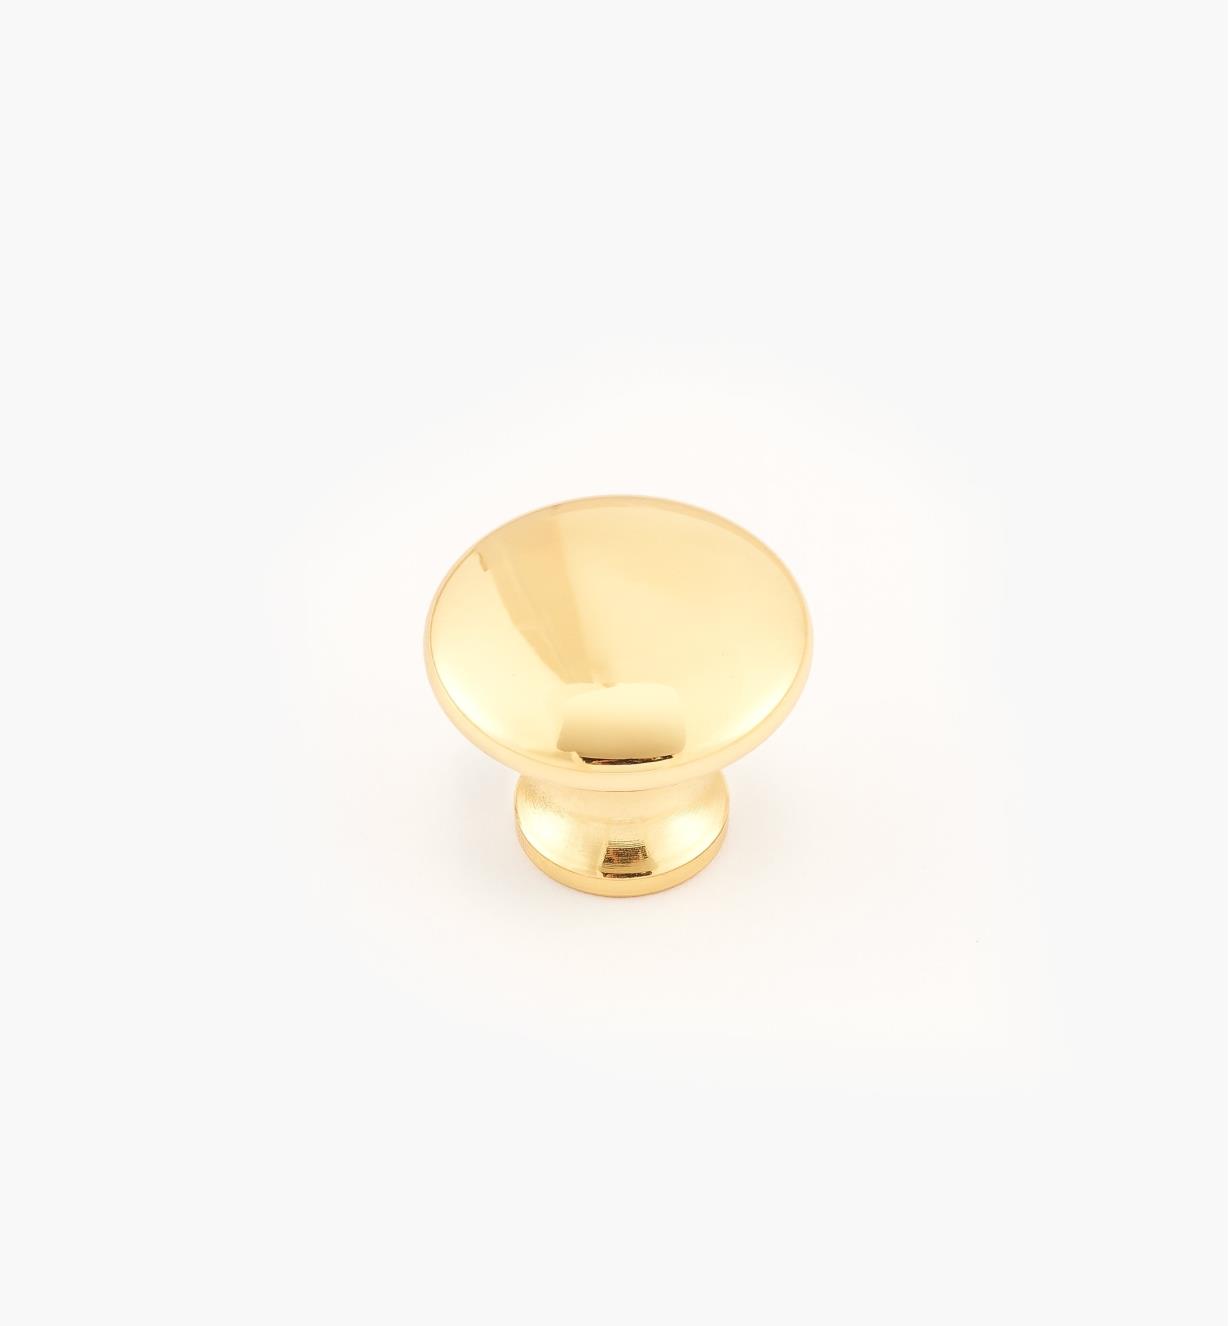 02W2709 - Polished Brass Suite - 3/4" x 5/8" Round Brass Knob